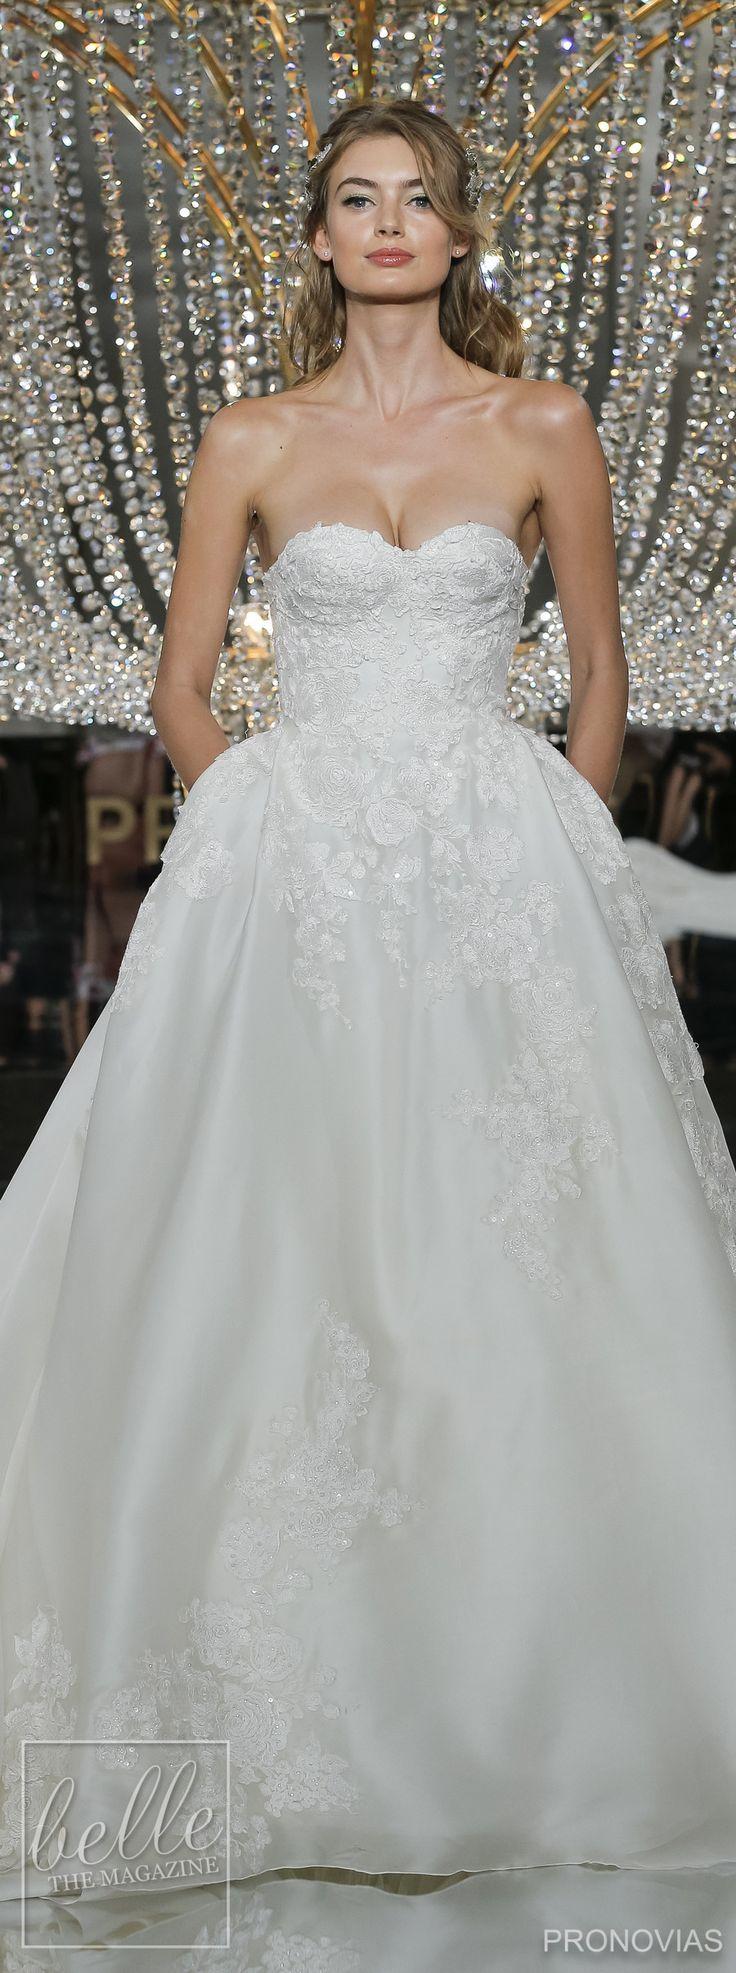 زفاف - Wedding Dresses By Pronovias 2018 Collection - New York Bridal Fashion Week